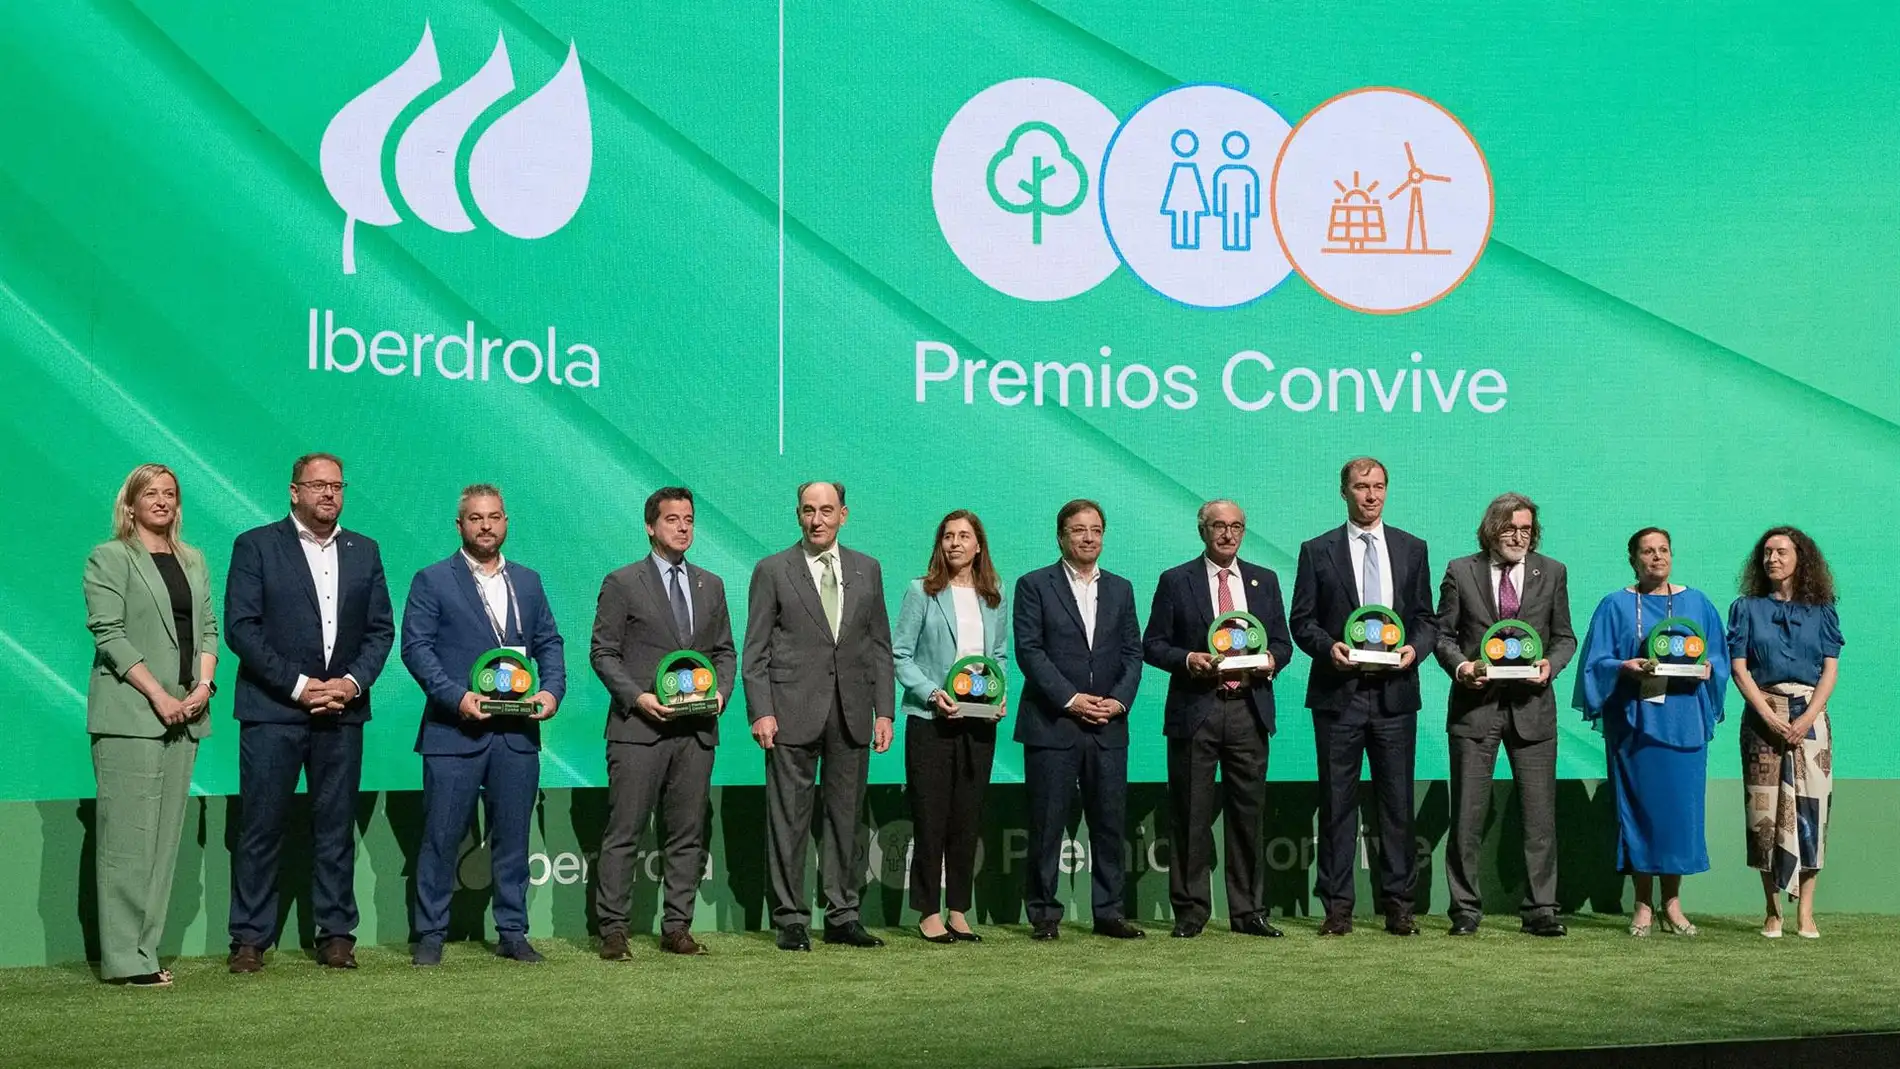 Iberdrola reconoce las iniciativas de convivencia de renovables, naturaleza y personas en los Premios Convive